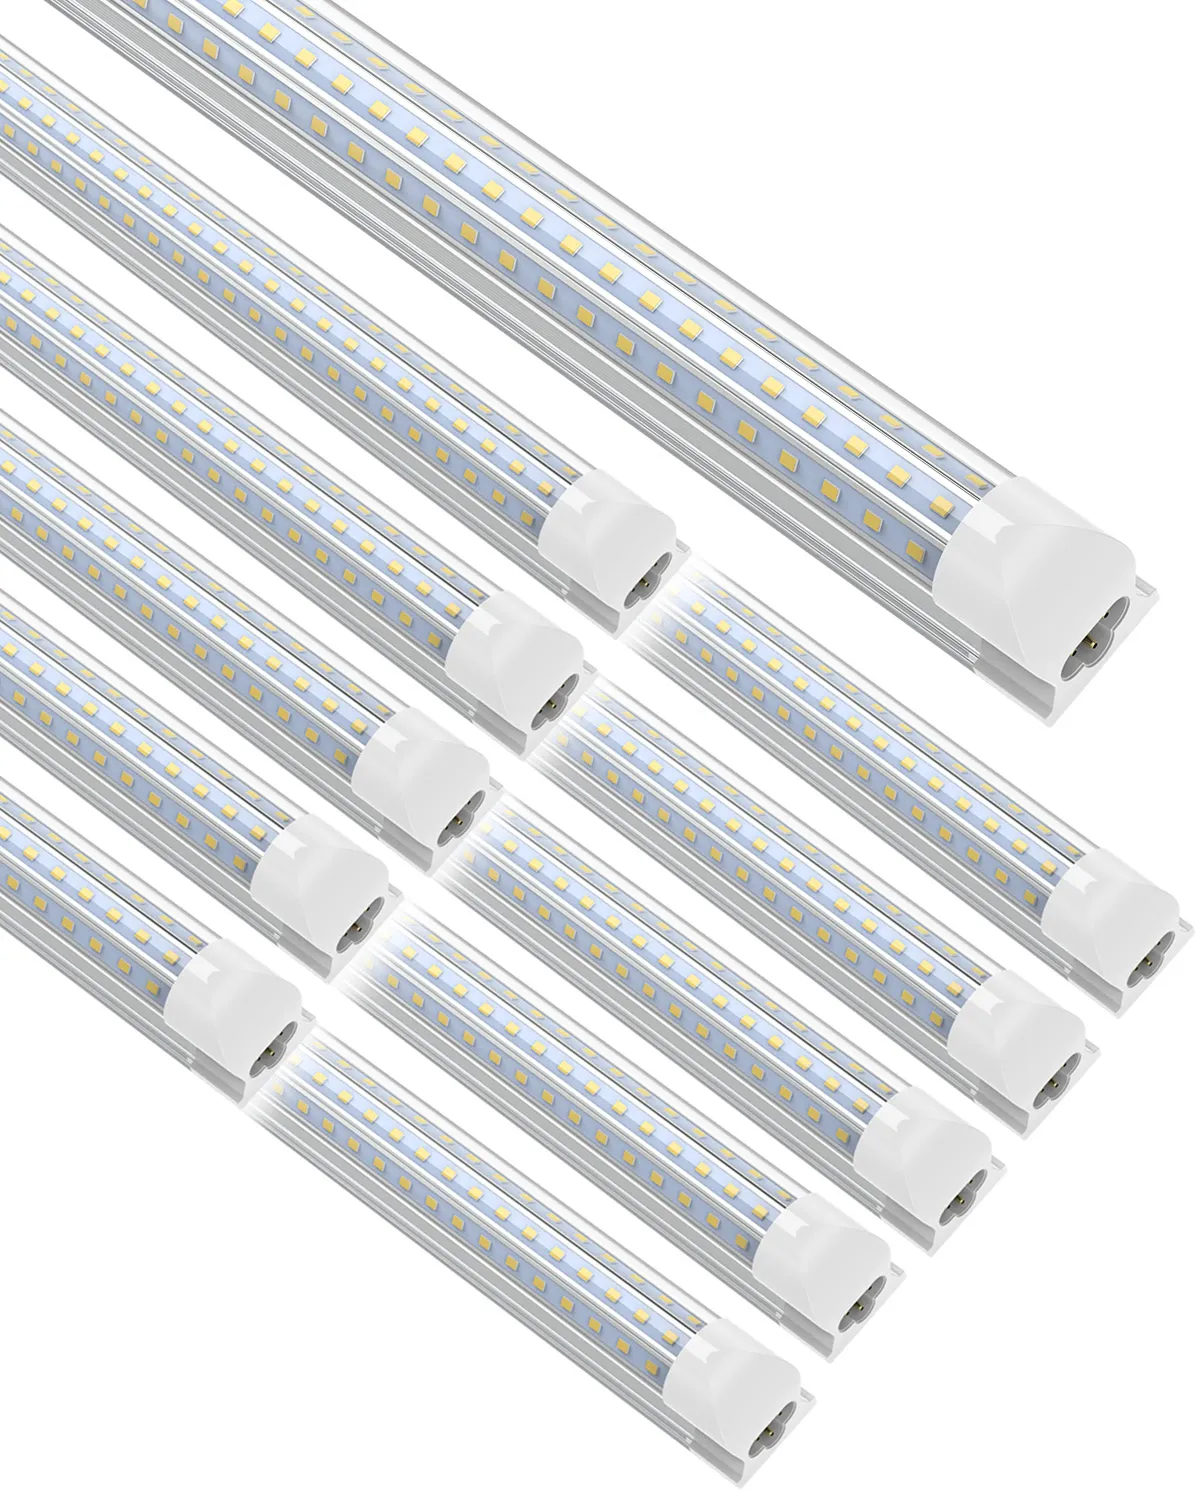 Tubes à LED T8 Jested Light D en forme de 8 pieds 90W blanc froid transparent transparent Shop Garage Office Lights 6 packs